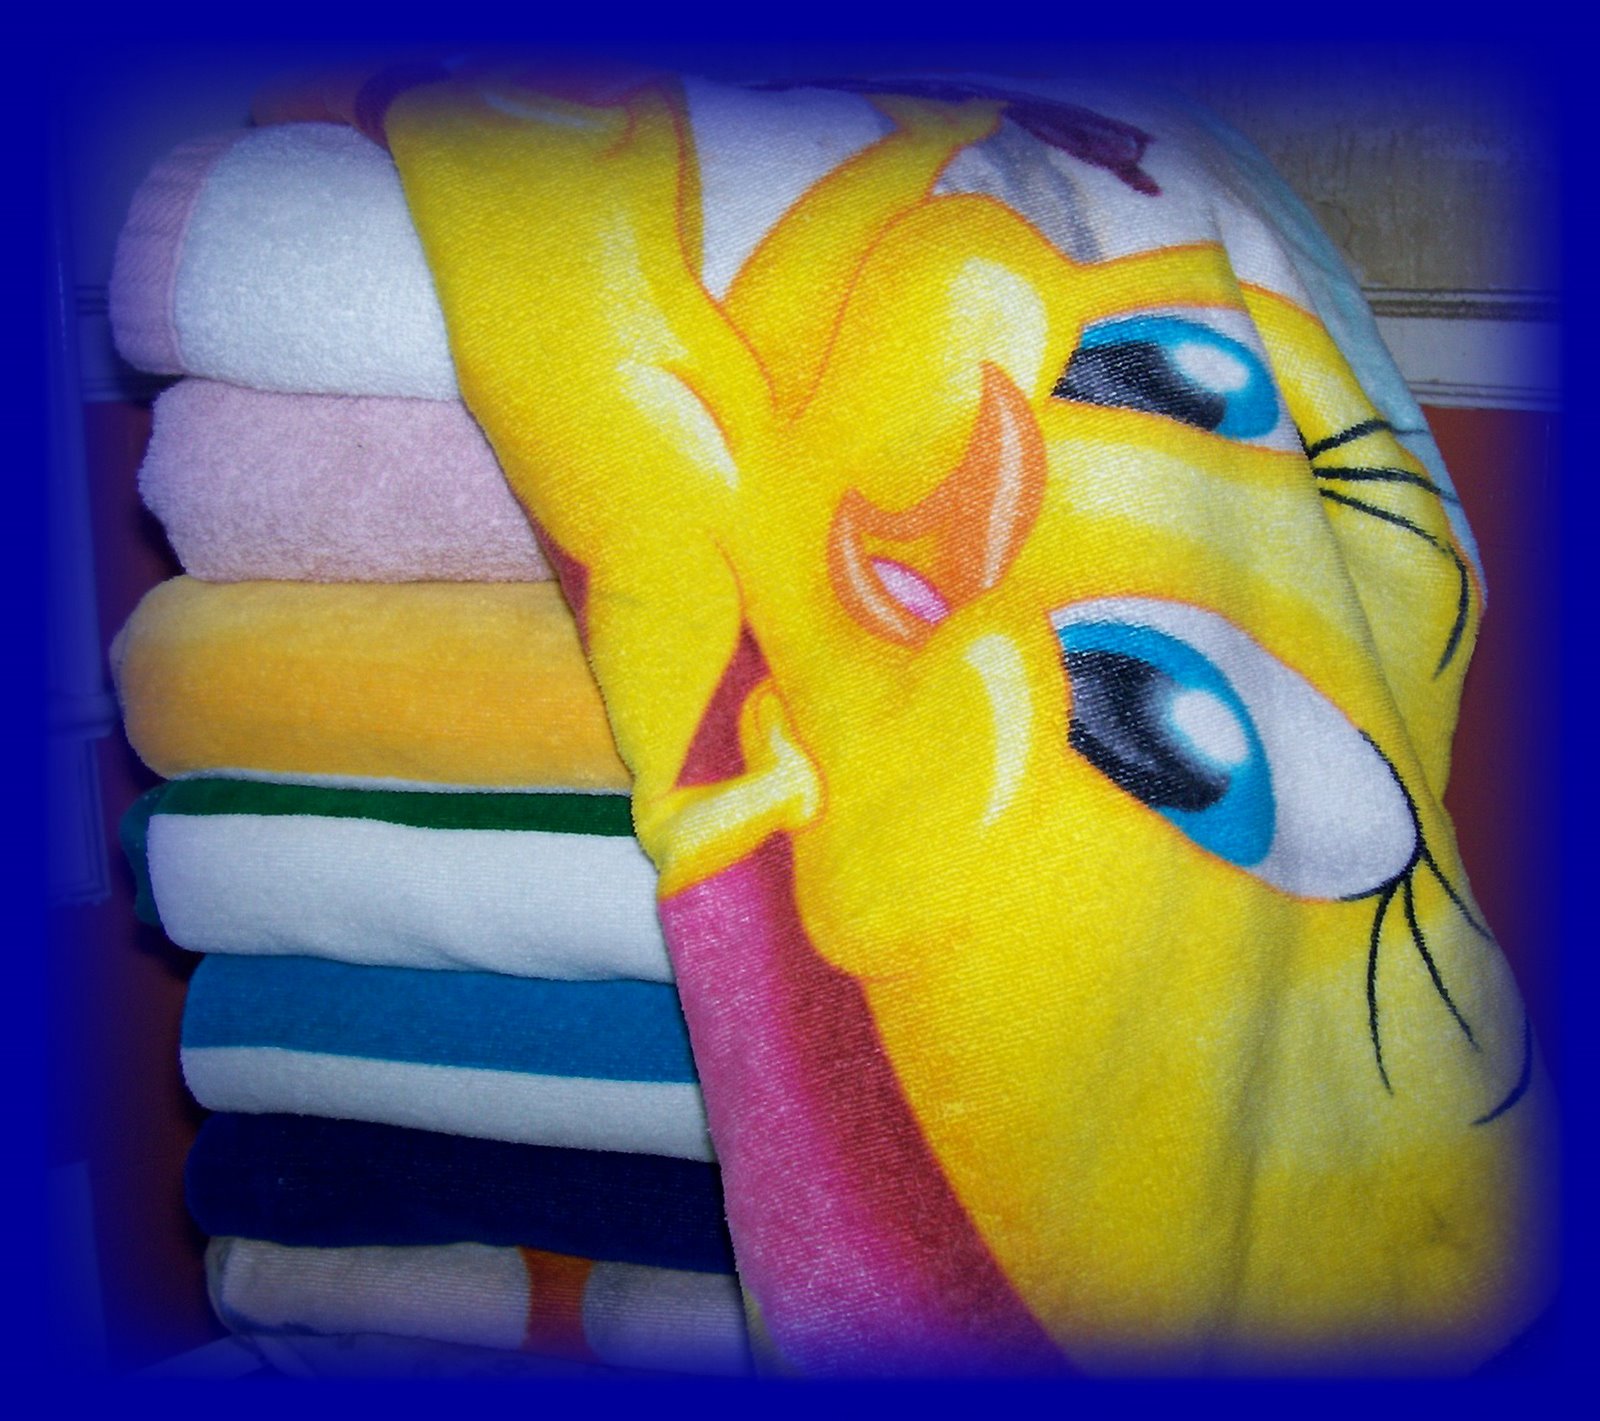 [towels.jpg]